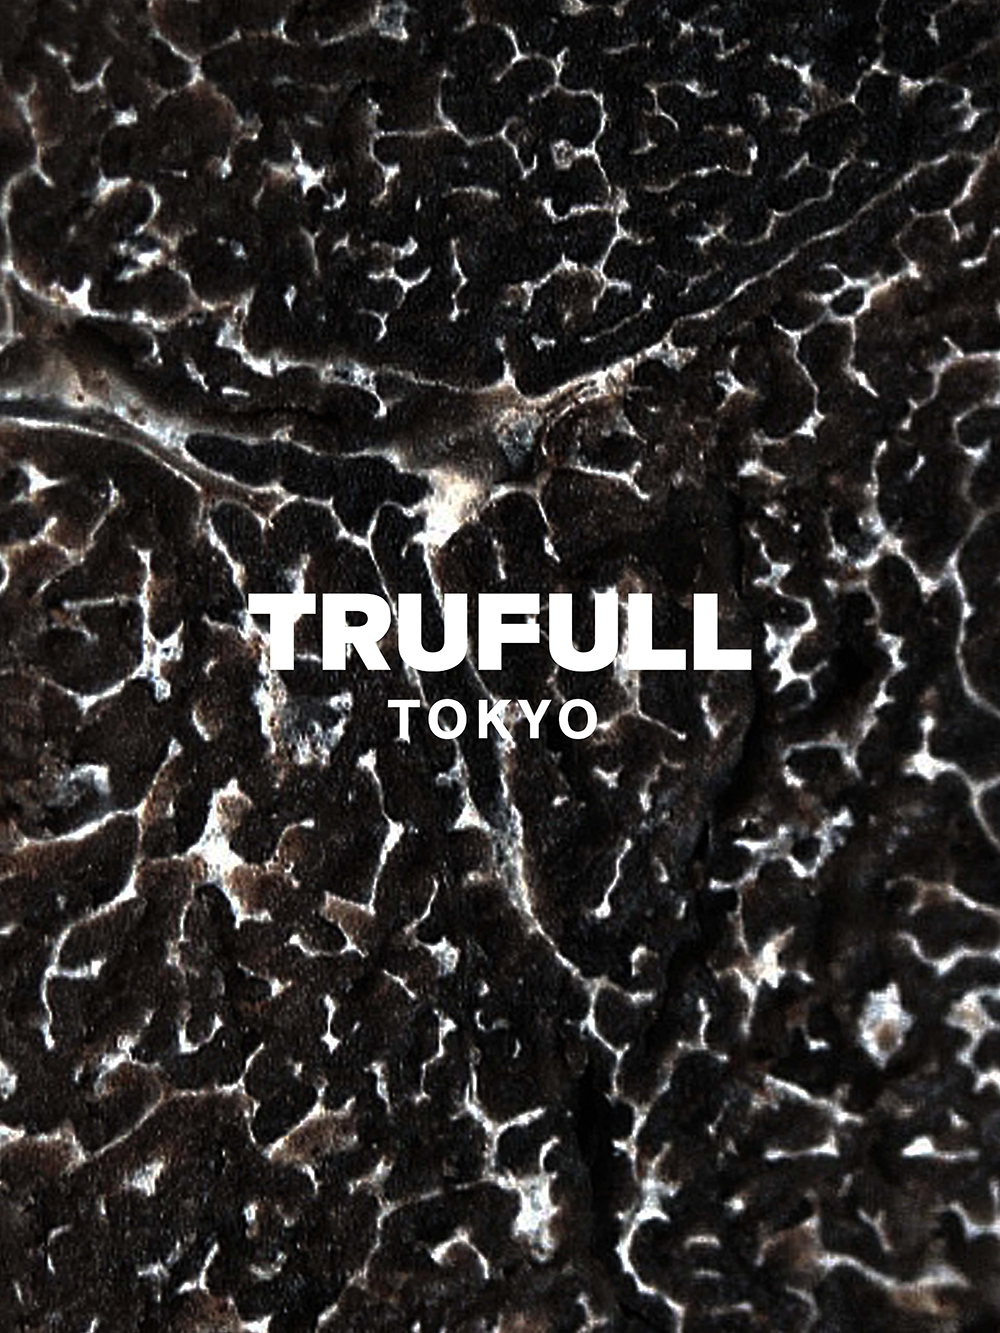 高級食材“トリュフ”をカジュアルに楽しむための食ブランド『TRUFULL TOKYO』がスタート。フレンチシェフが本気で作ったトリュフアイスを発売のサブ画像3